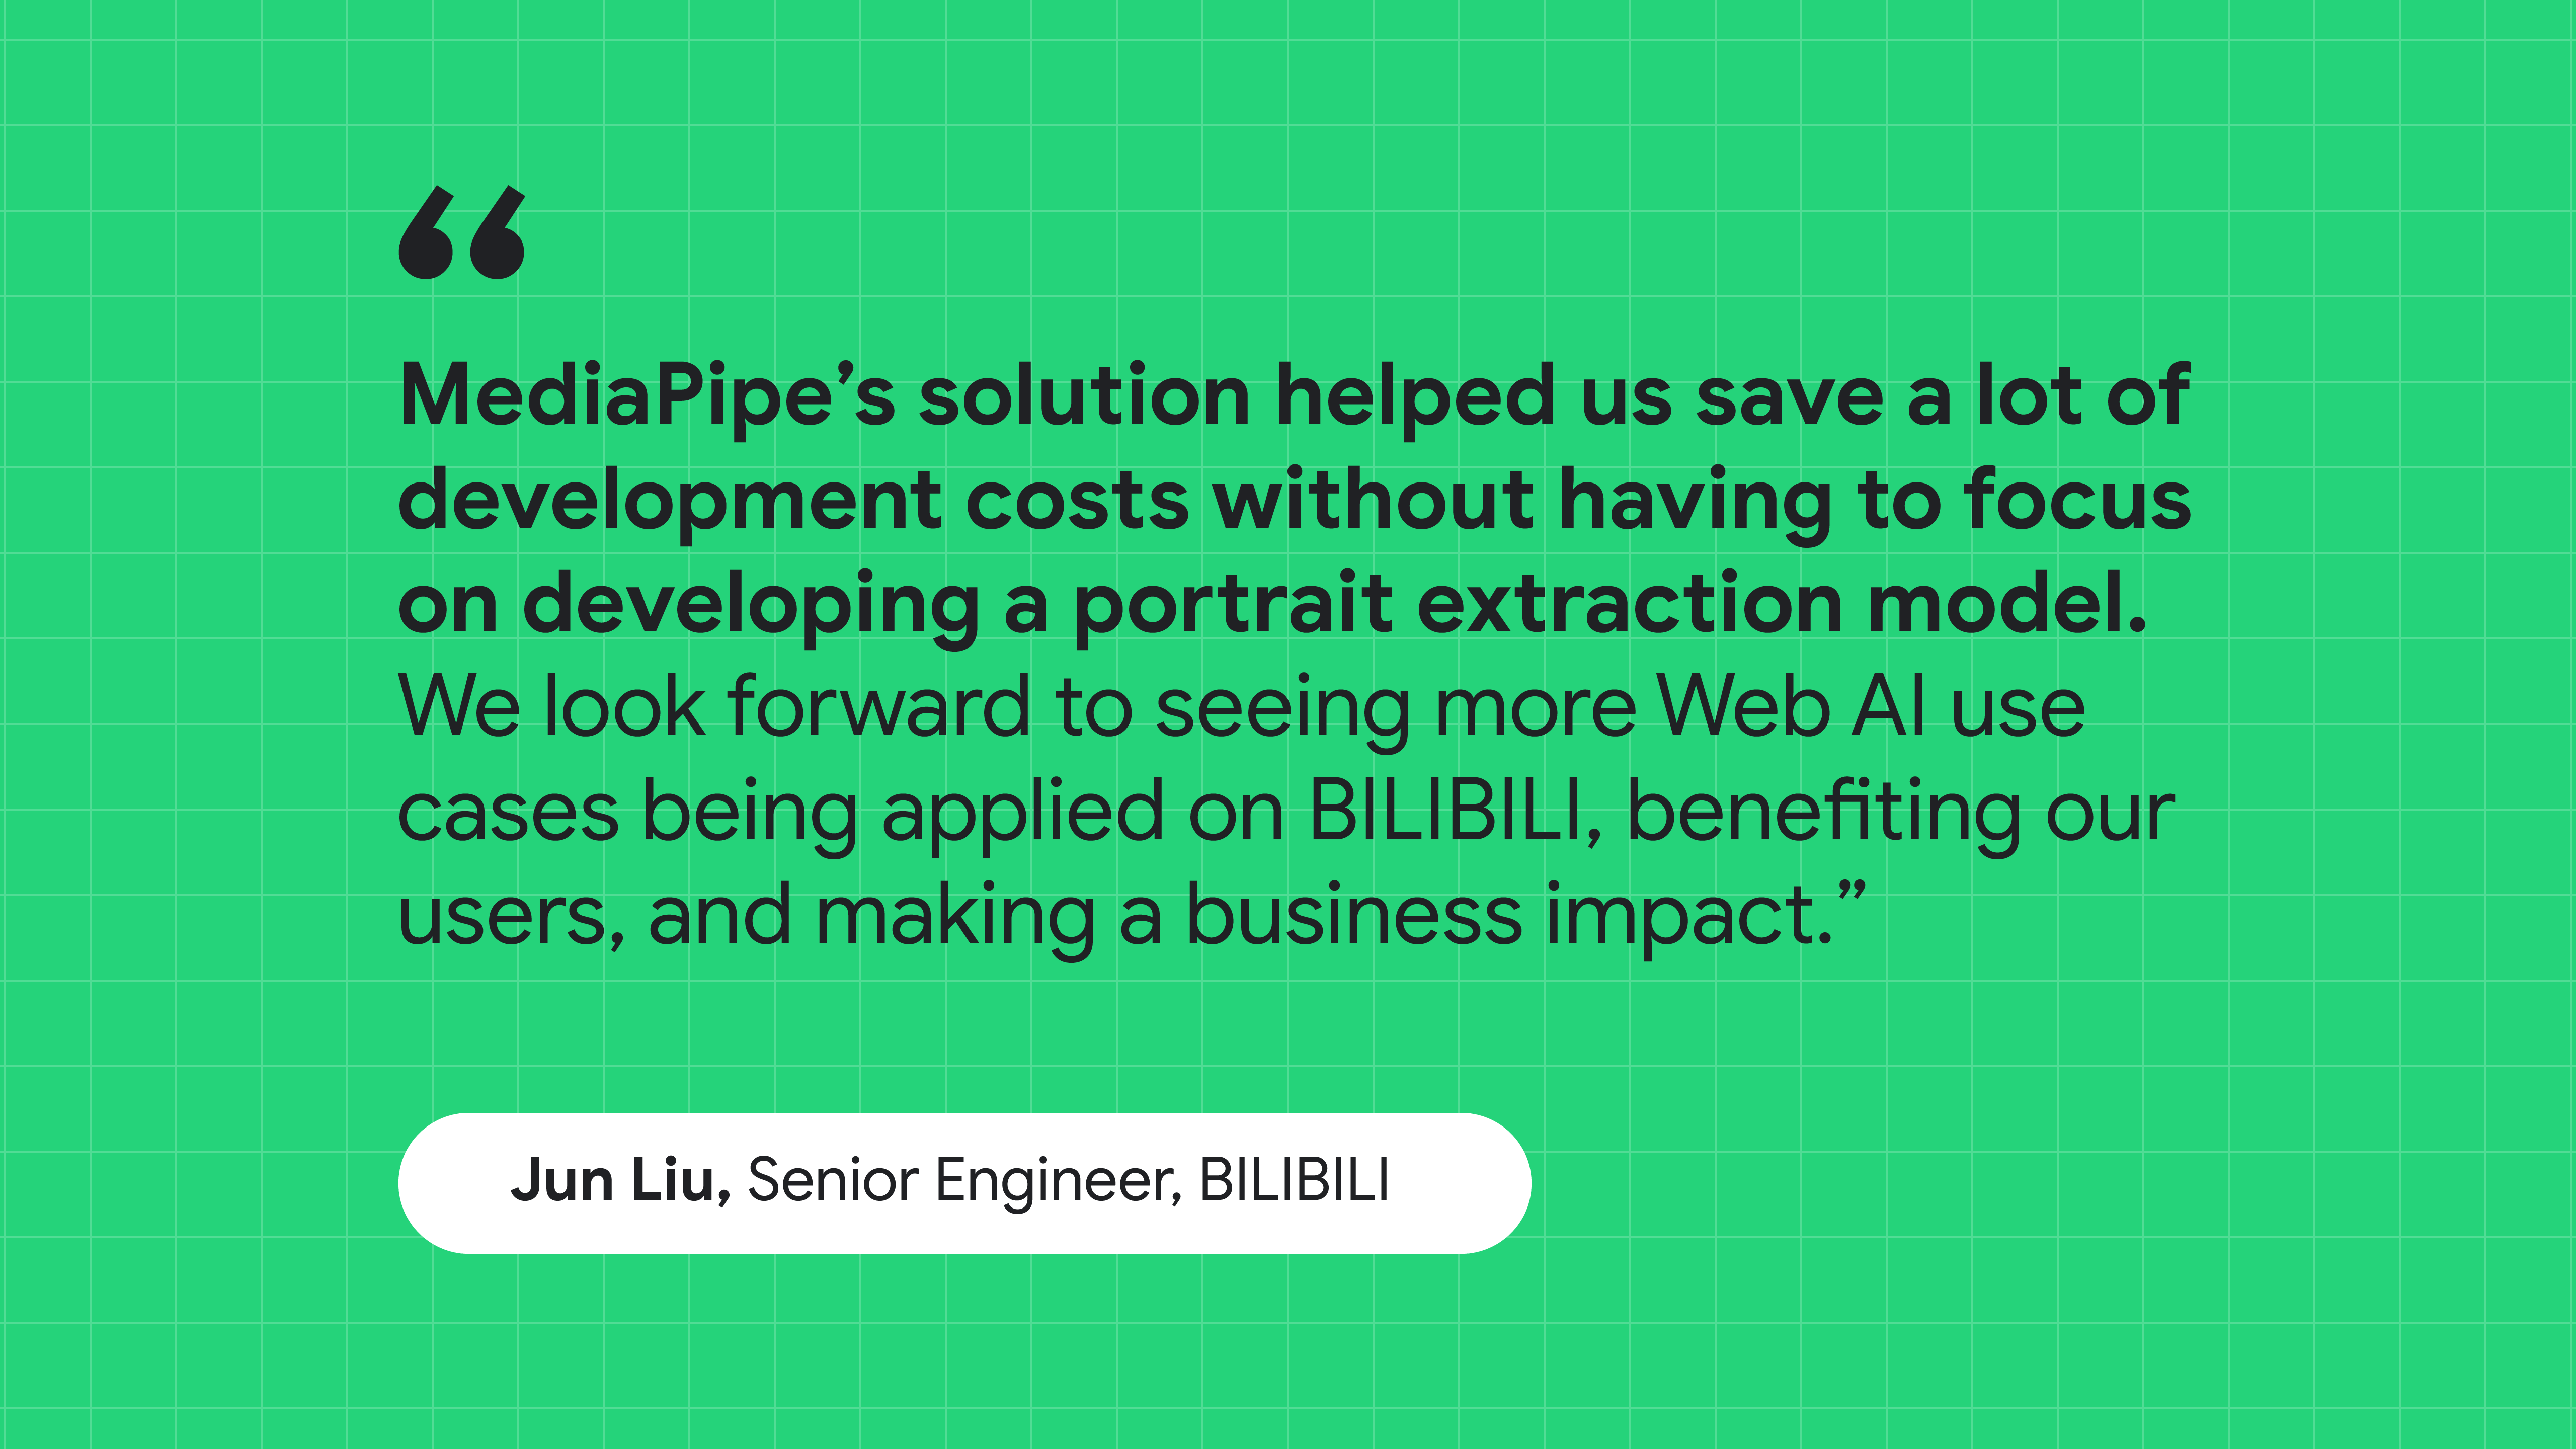 คำกล่าวของ Jun Liu วิศวกรอาวุโสที่ BILIBILI กล่าวว่าโซลูชันของ MediaPipe ช่วยให้เราประหยัดต้นทุนในการพัฒนาโดยไม่ต้องเสียเวลาไปกับการสร้างแบบจำลองการแยกภาพบุคคล